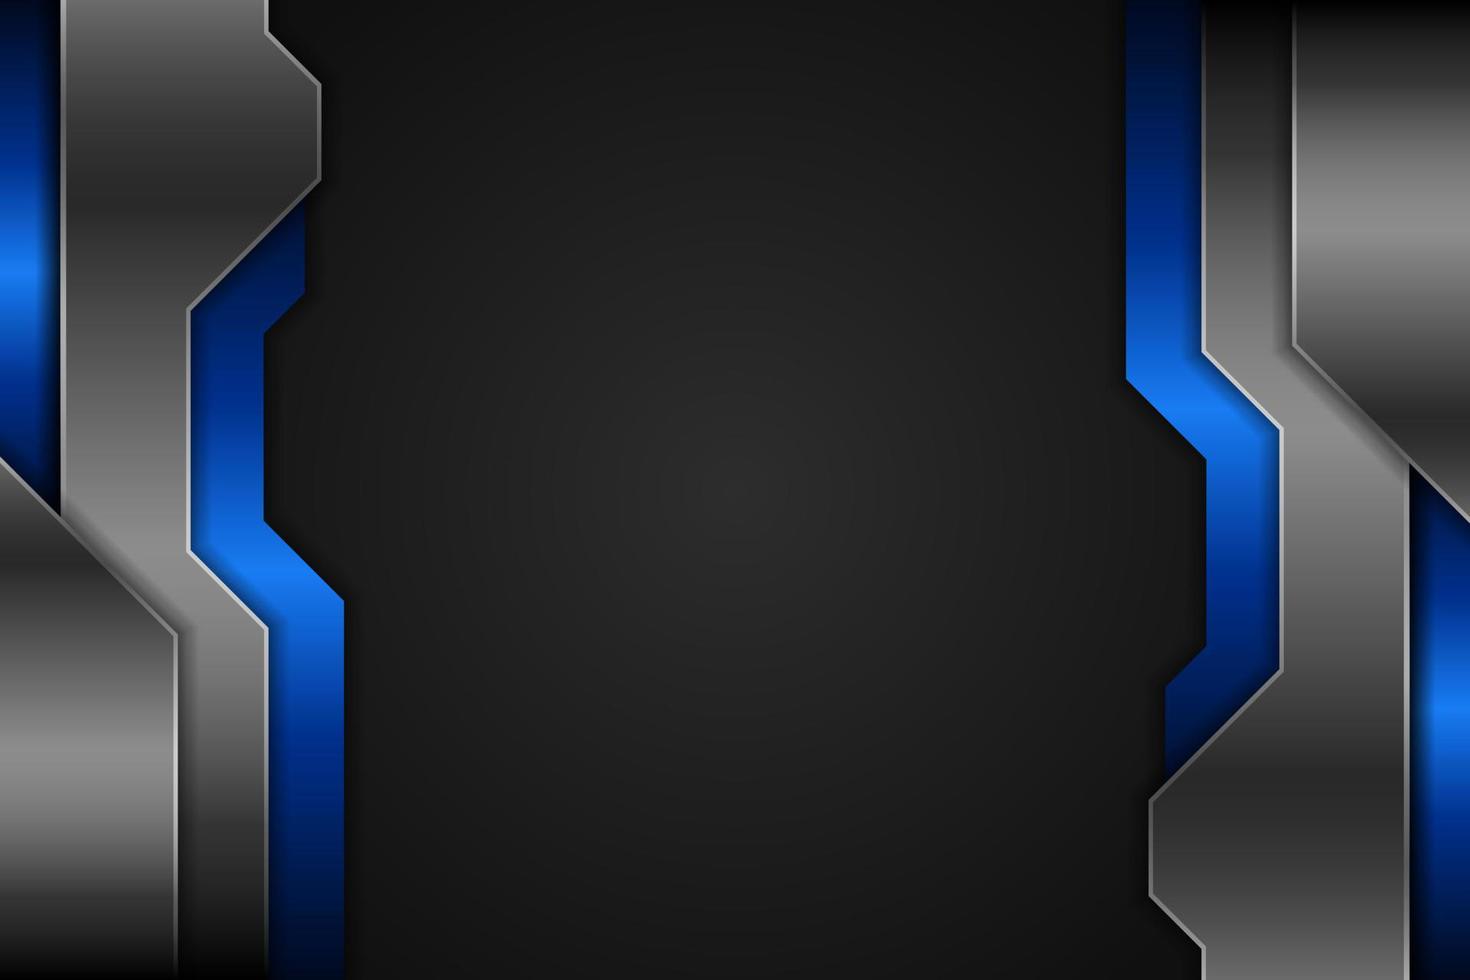 moderner Hintergrund realistische überlappende Layer-Technologie metallisch glänzend blau und grau vektor